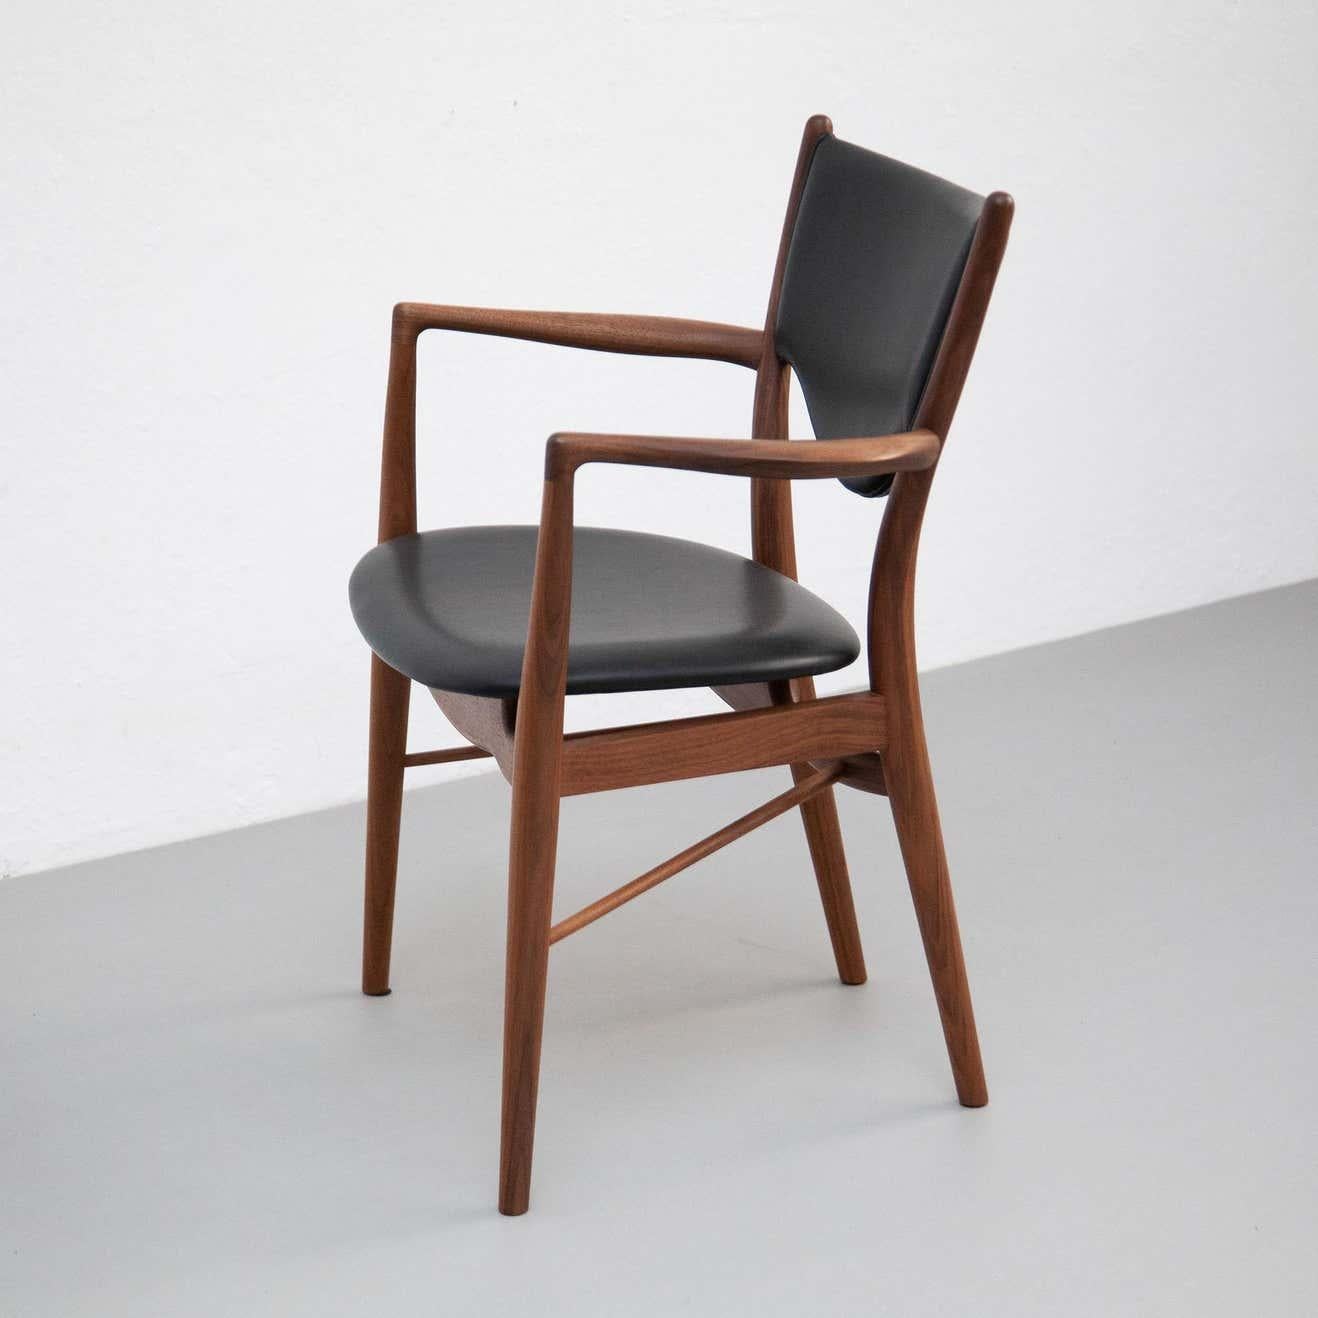 Chaise conçue par Finn Juhls en 1946, relancée en 2018.
Fabriqué par la Maison Finn Juhl au Danemark.

Cette chaise est un exemple des plus belles réalisations de Finn Juhls. Il a été conçu à l'origine en 1946 pour l'exposition de la Guild de